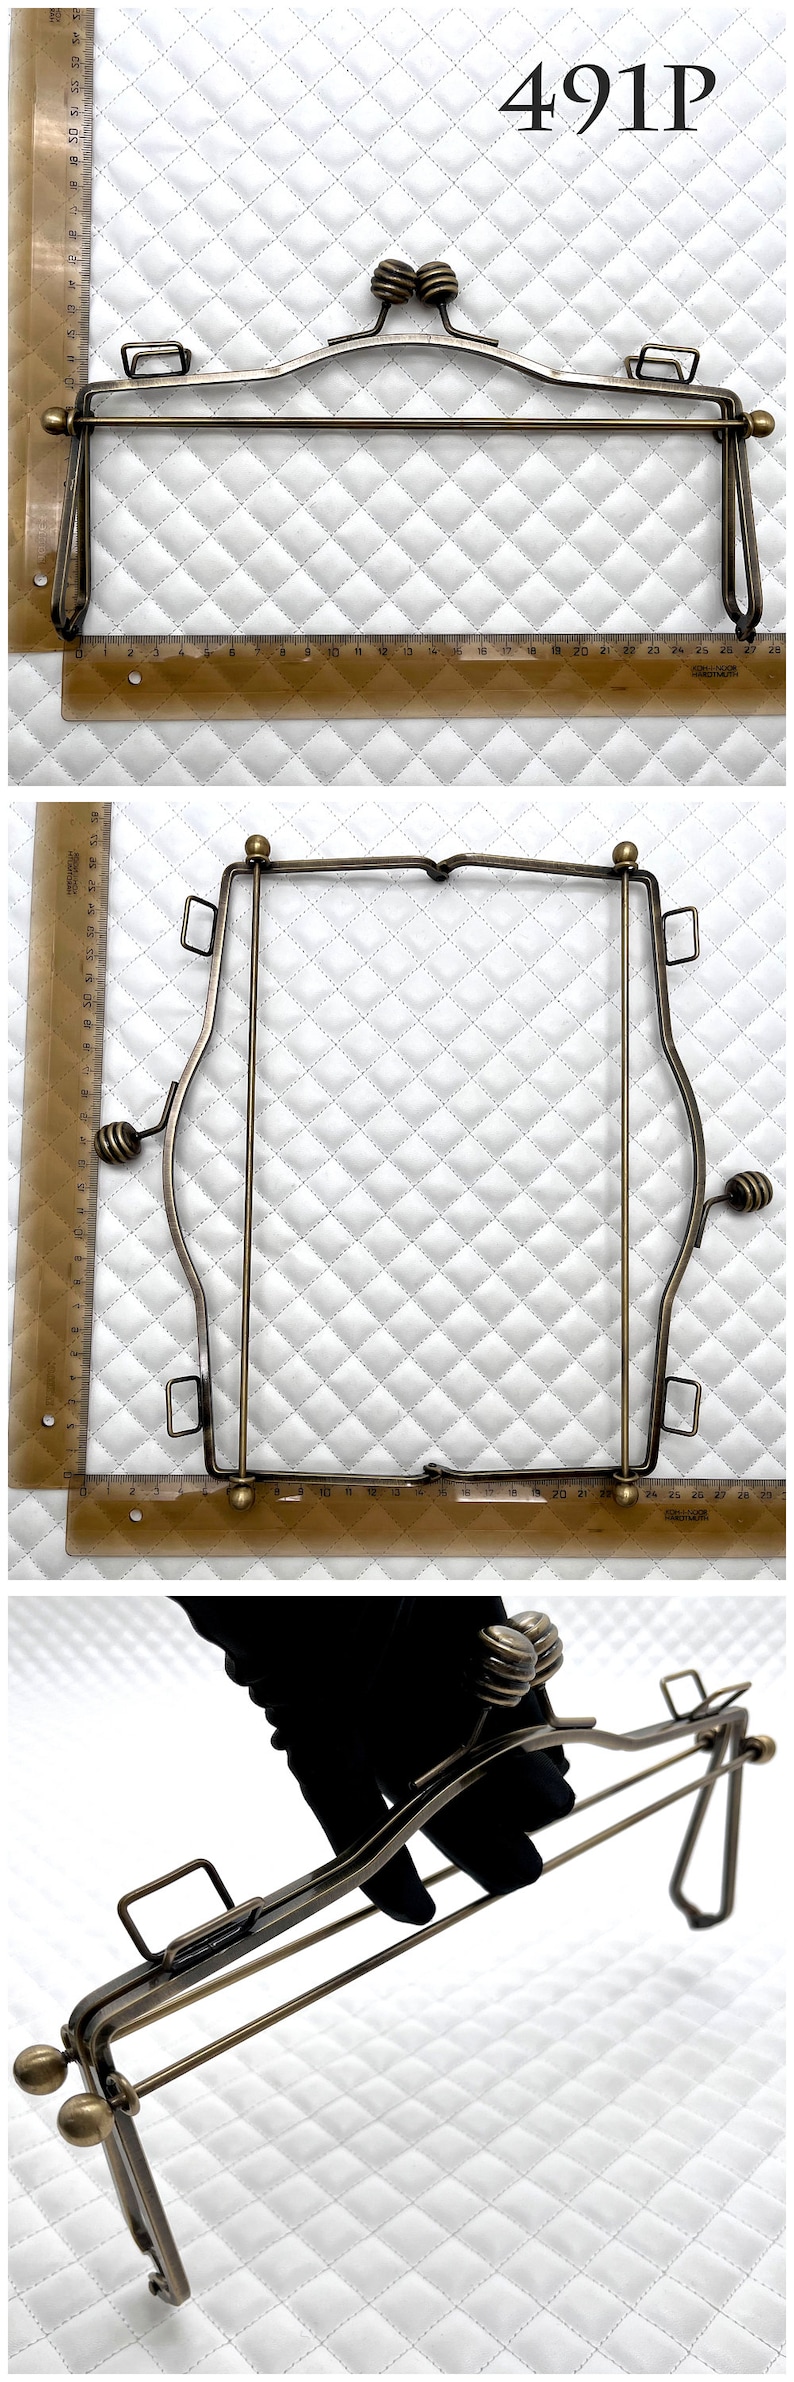 Monedero de alambre de hierro de 4 tamaños, marco de embrague para bolso, cierre de beso, antibronce, para reemplazo de fabricación de bolsos 491P 10 1/2"x4 3/4"